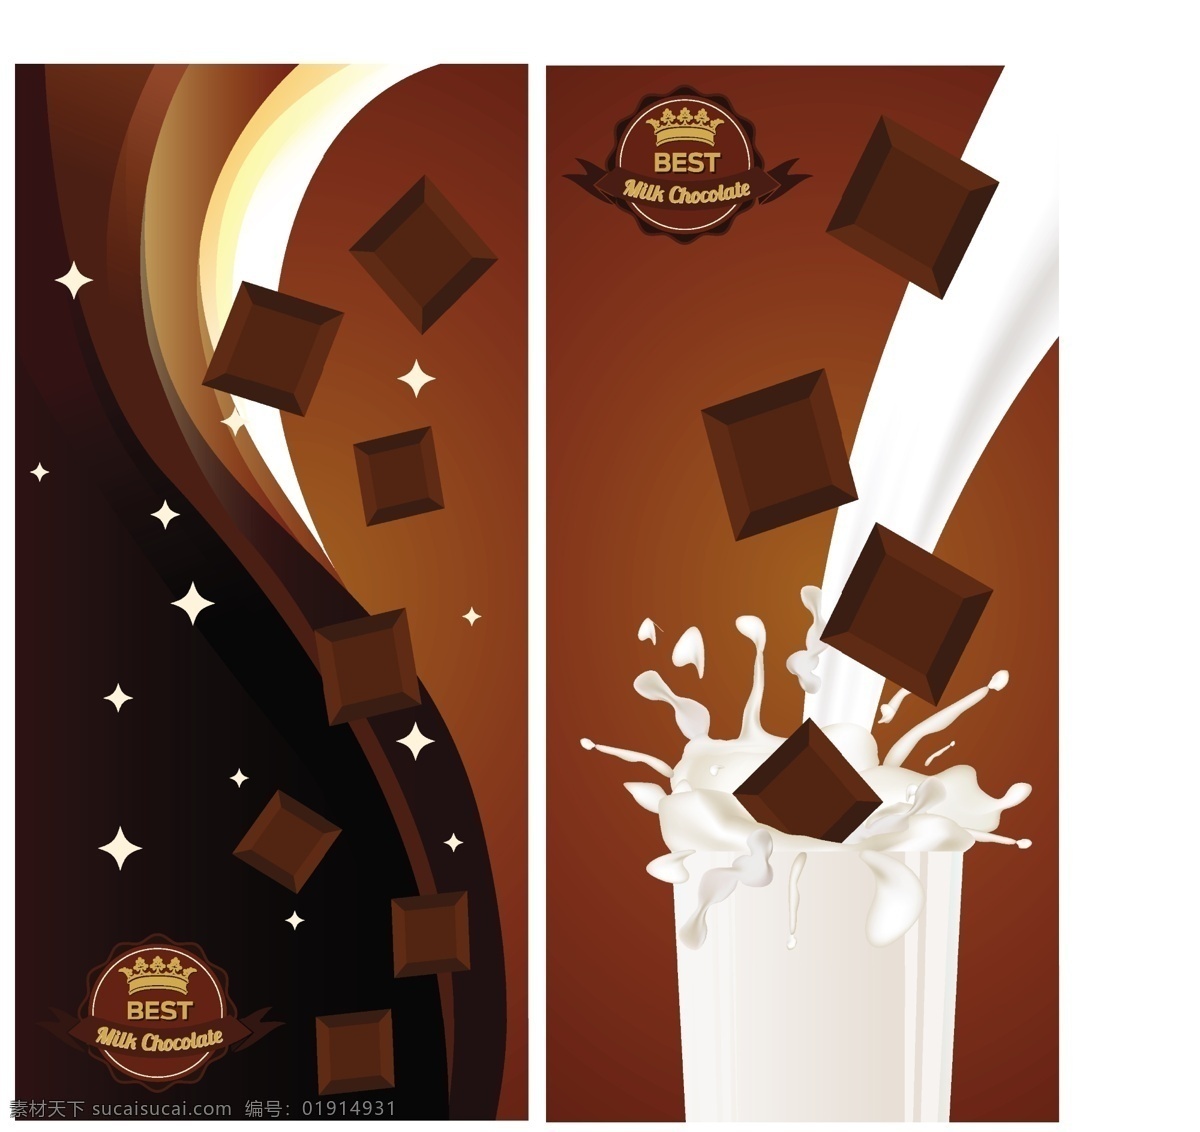 牛奶 巧克力 横幅 广告背景 广告 背景 背景素材 饮料 背景图 甜点 美味 食品 棕色 方块 甜品